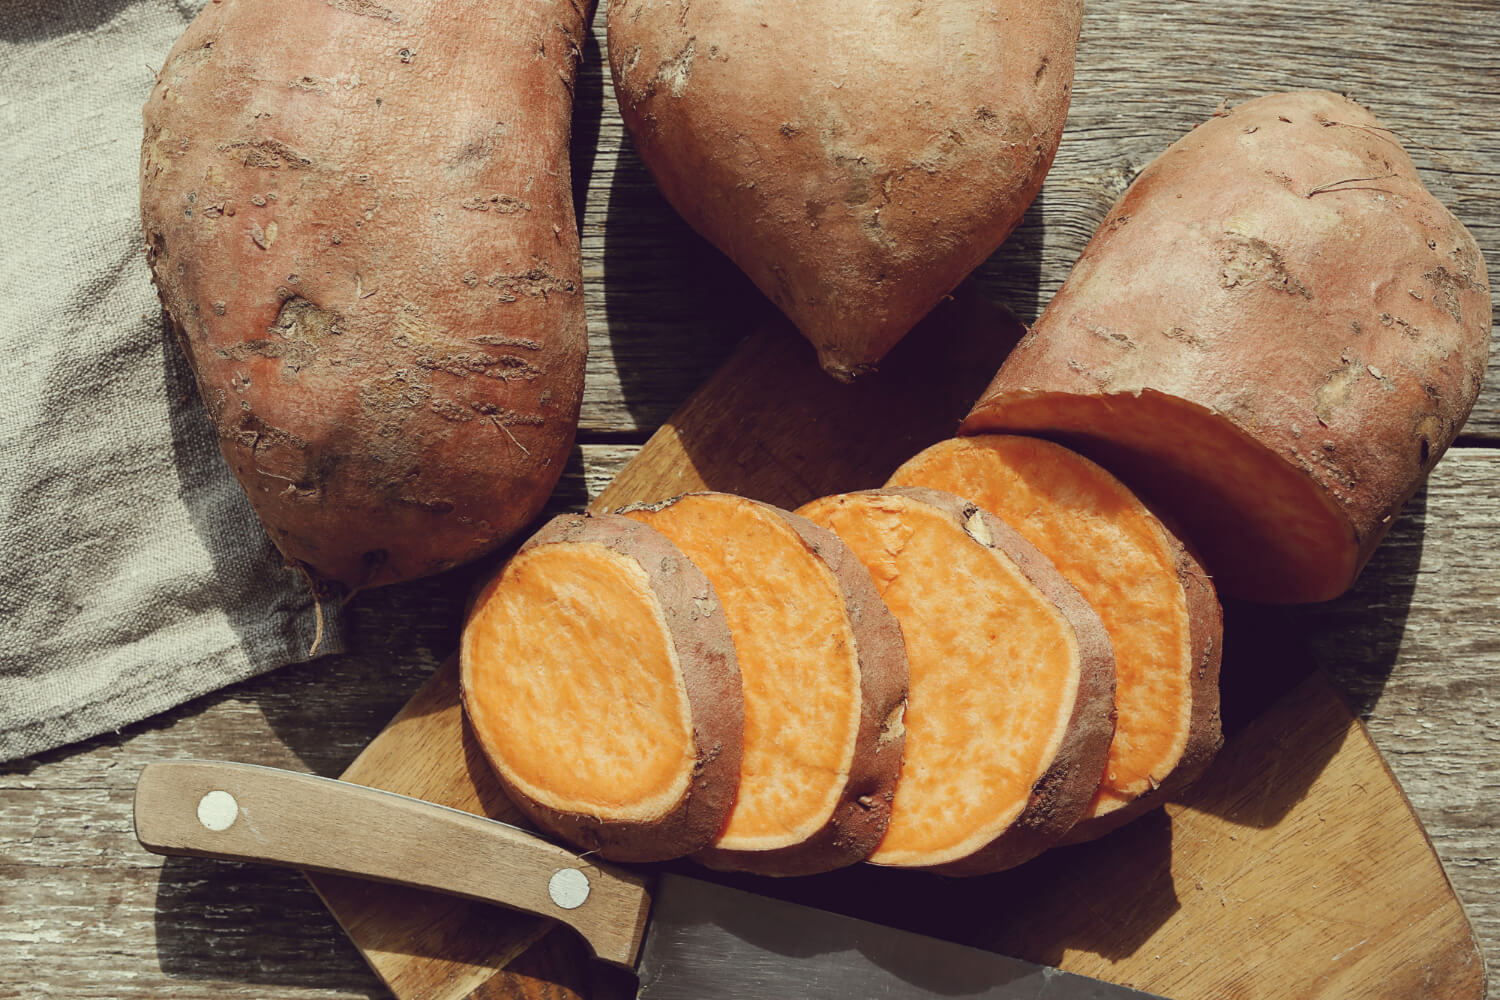 White sweet potato nutrition White sweet potato recipes Health benefits of white sweet potatoes Cooking with white sweet potatoes